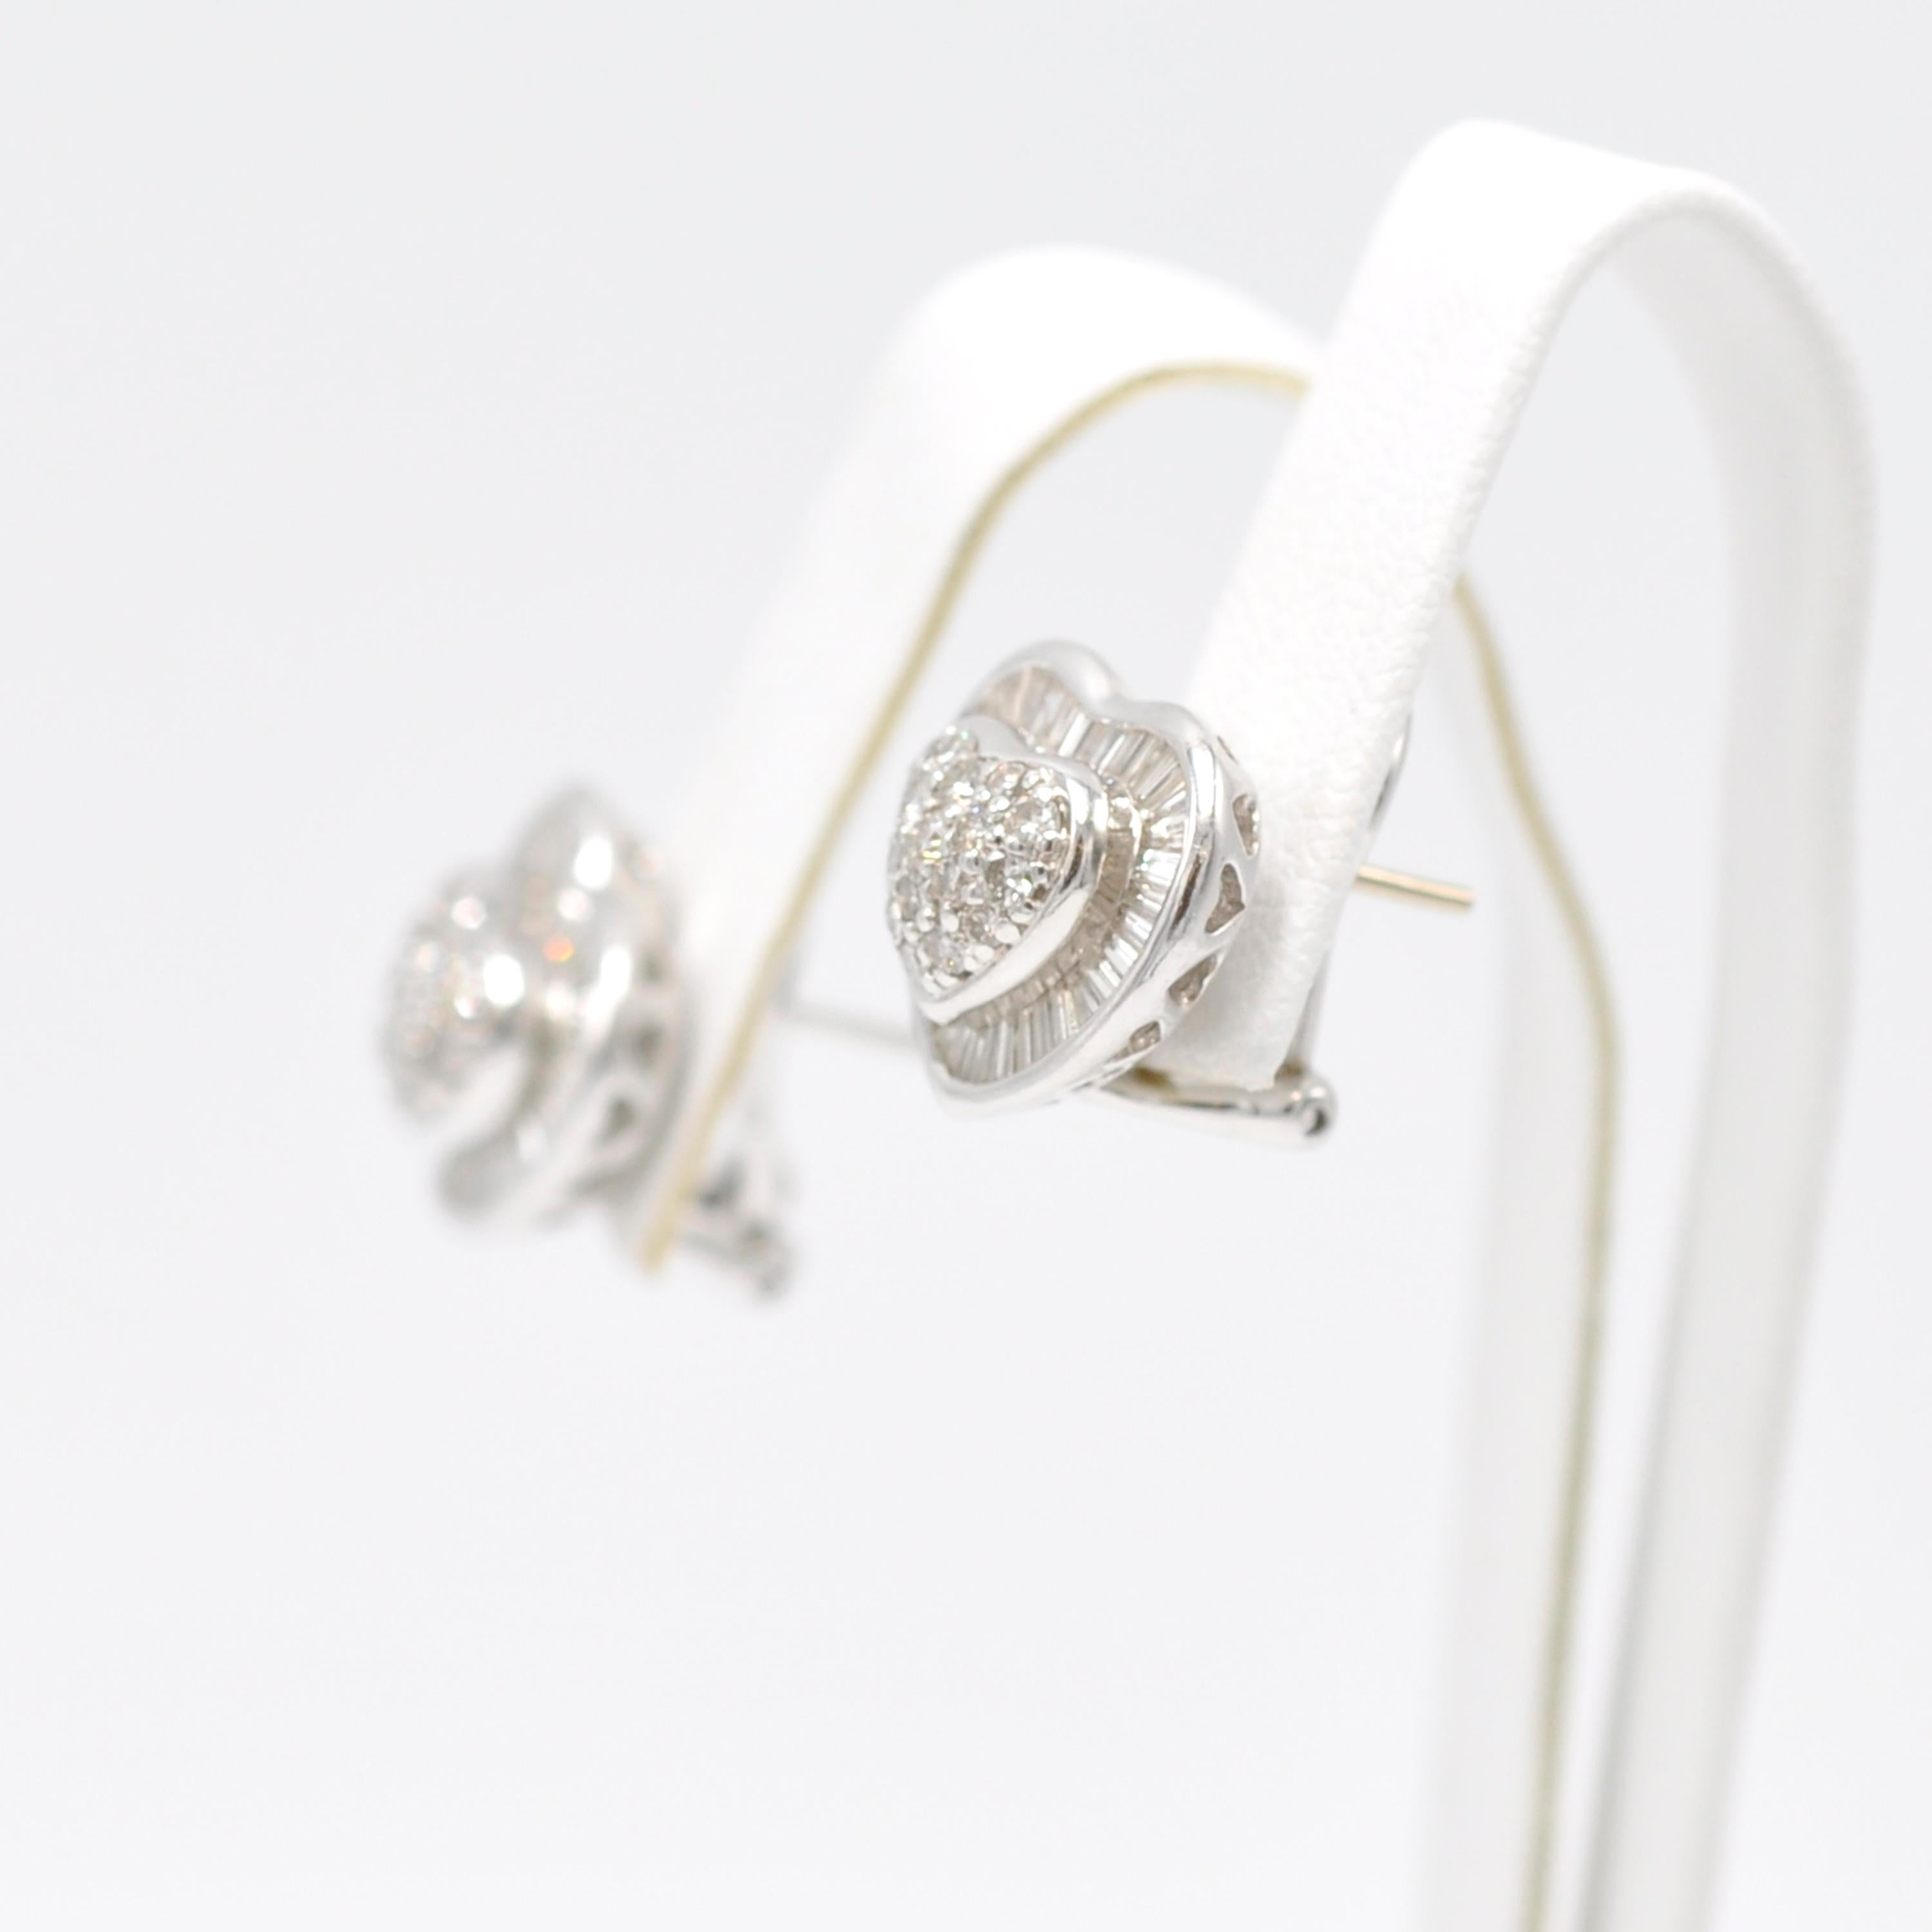 Modern White Gold Diamond Heart Earring Studs